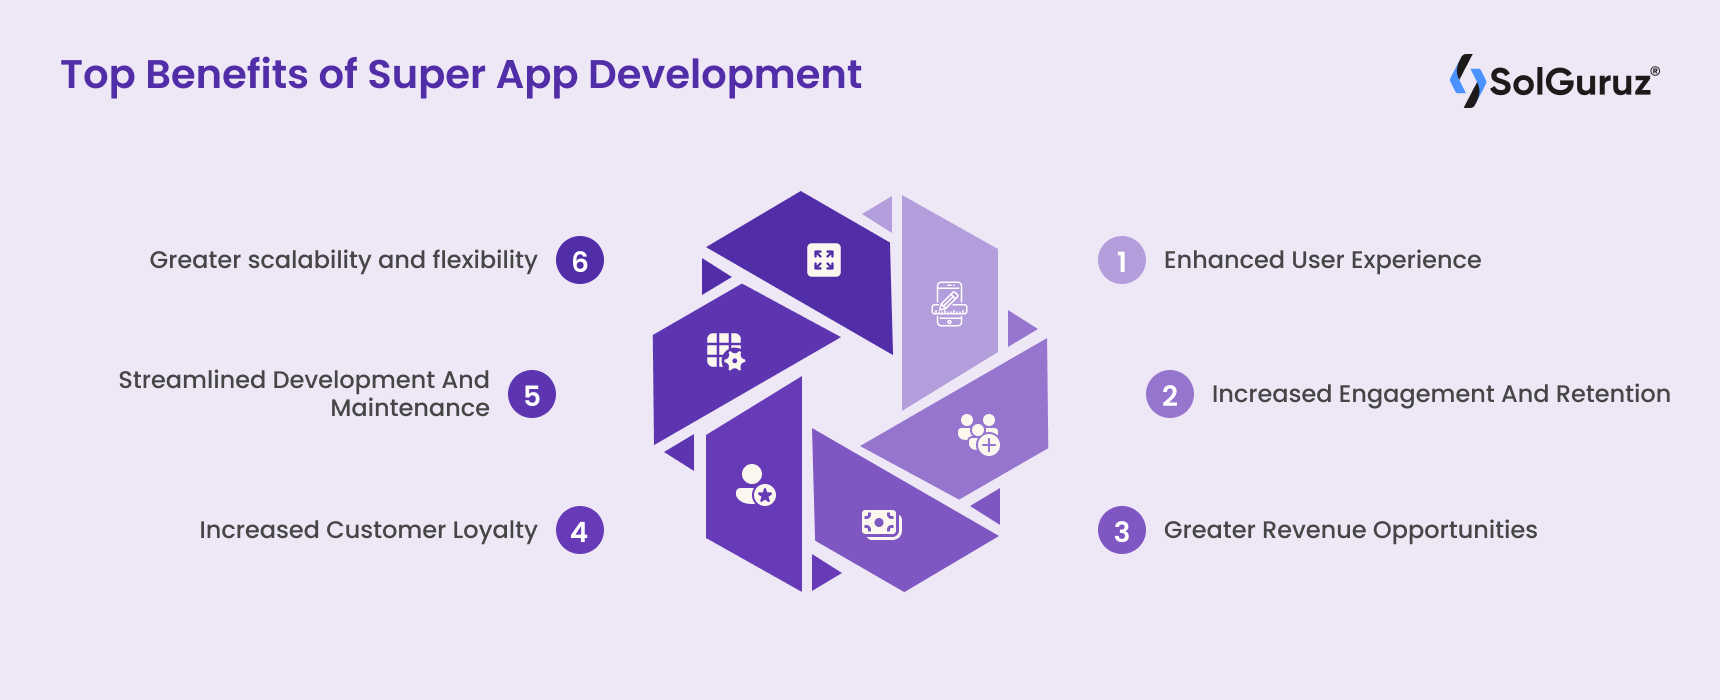 Top Benefits of Super App Development